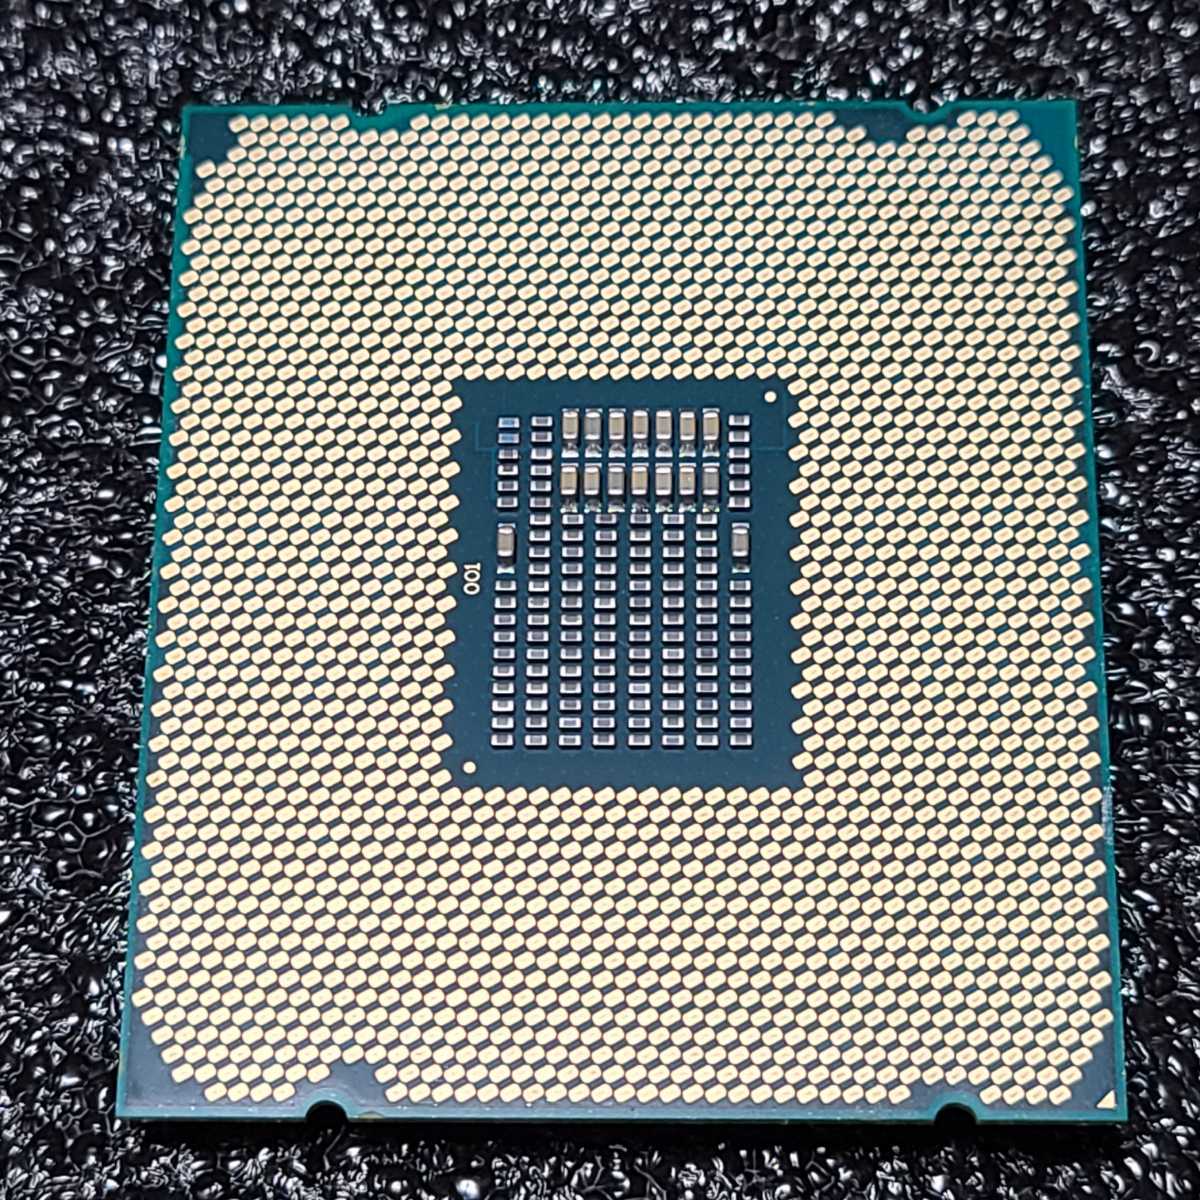 13532円 最新な 未使用品 intel CPU Core i5-7600 3.5GHz 6Mキャッシュ 4コア 4スレッド LGA1151 BX80677I57600